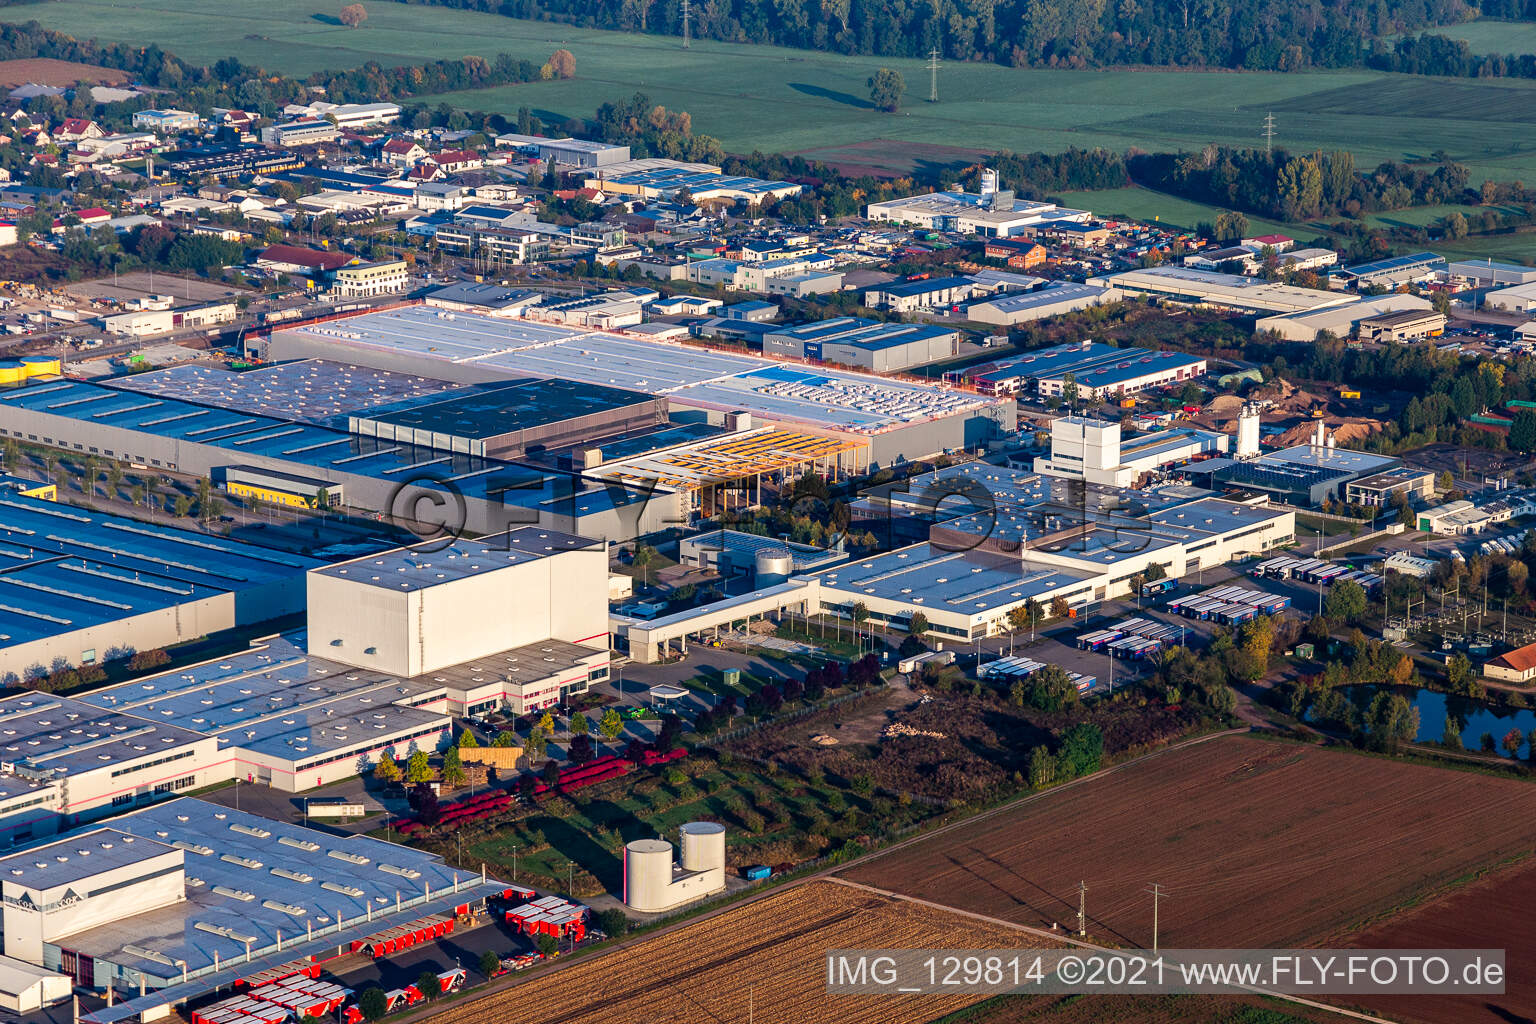 Vue aérienne de Zone commerciale Interpark avec Tricor Packaging & Logistics AG, Prowell Papierbedarf Gmbh à Offenbach an der Queich dans le département Rhénanie-Palatinat, Allemagne